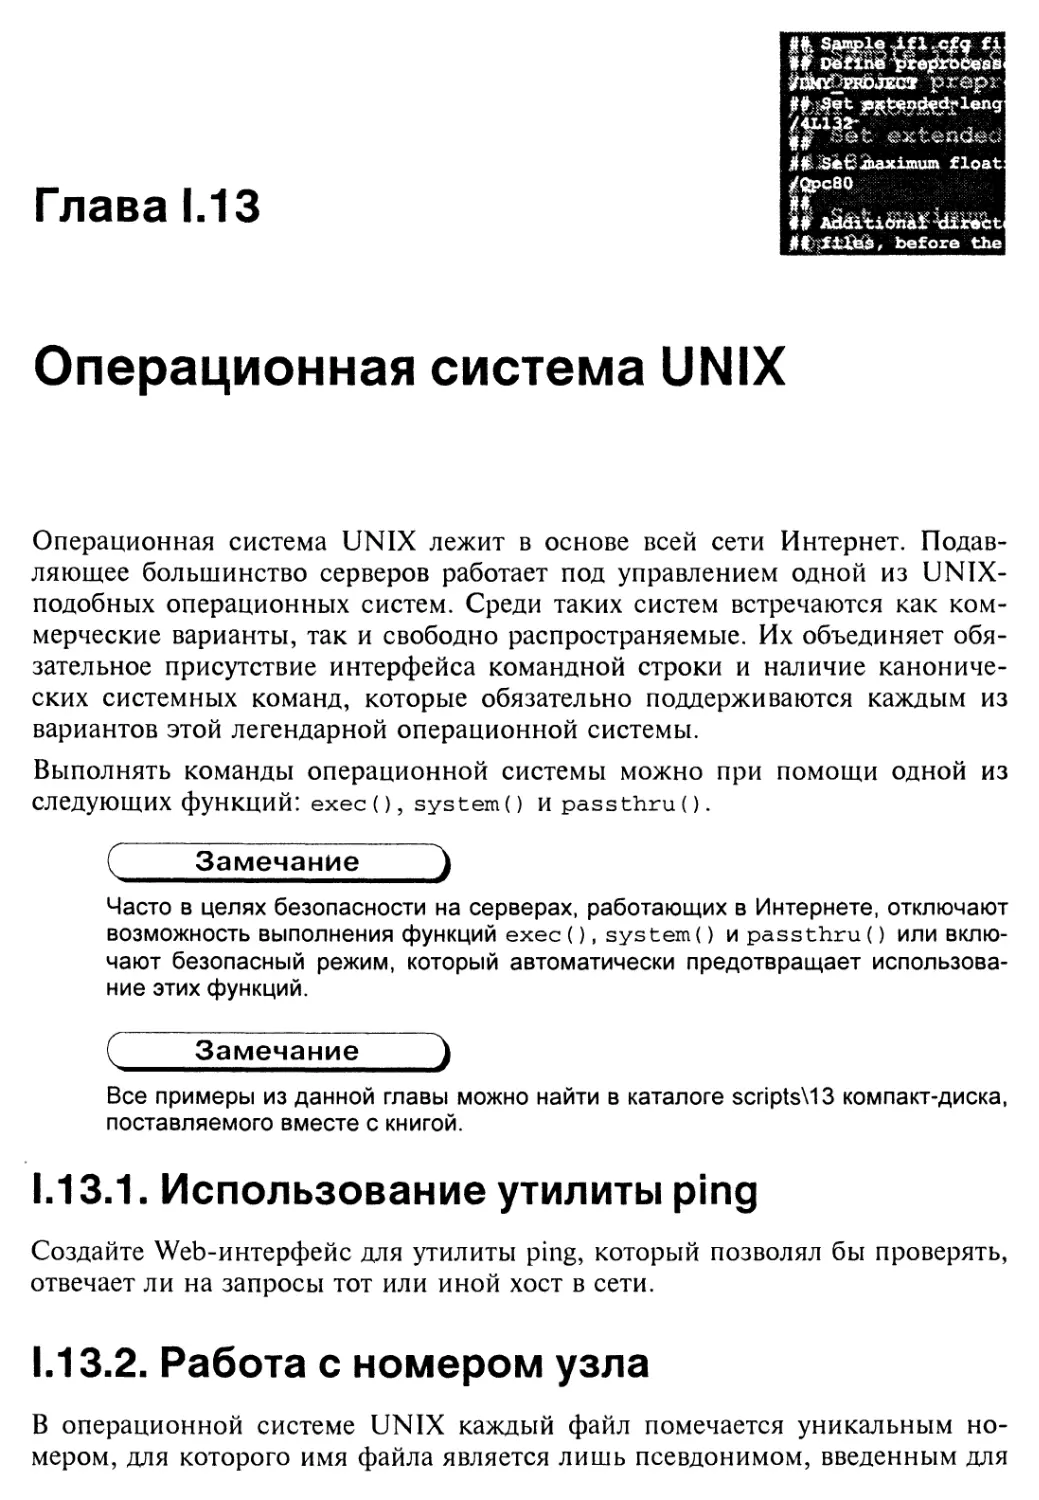 Глава 1.13. Операционная система UNIX
1.13.2. Работа с номером узла